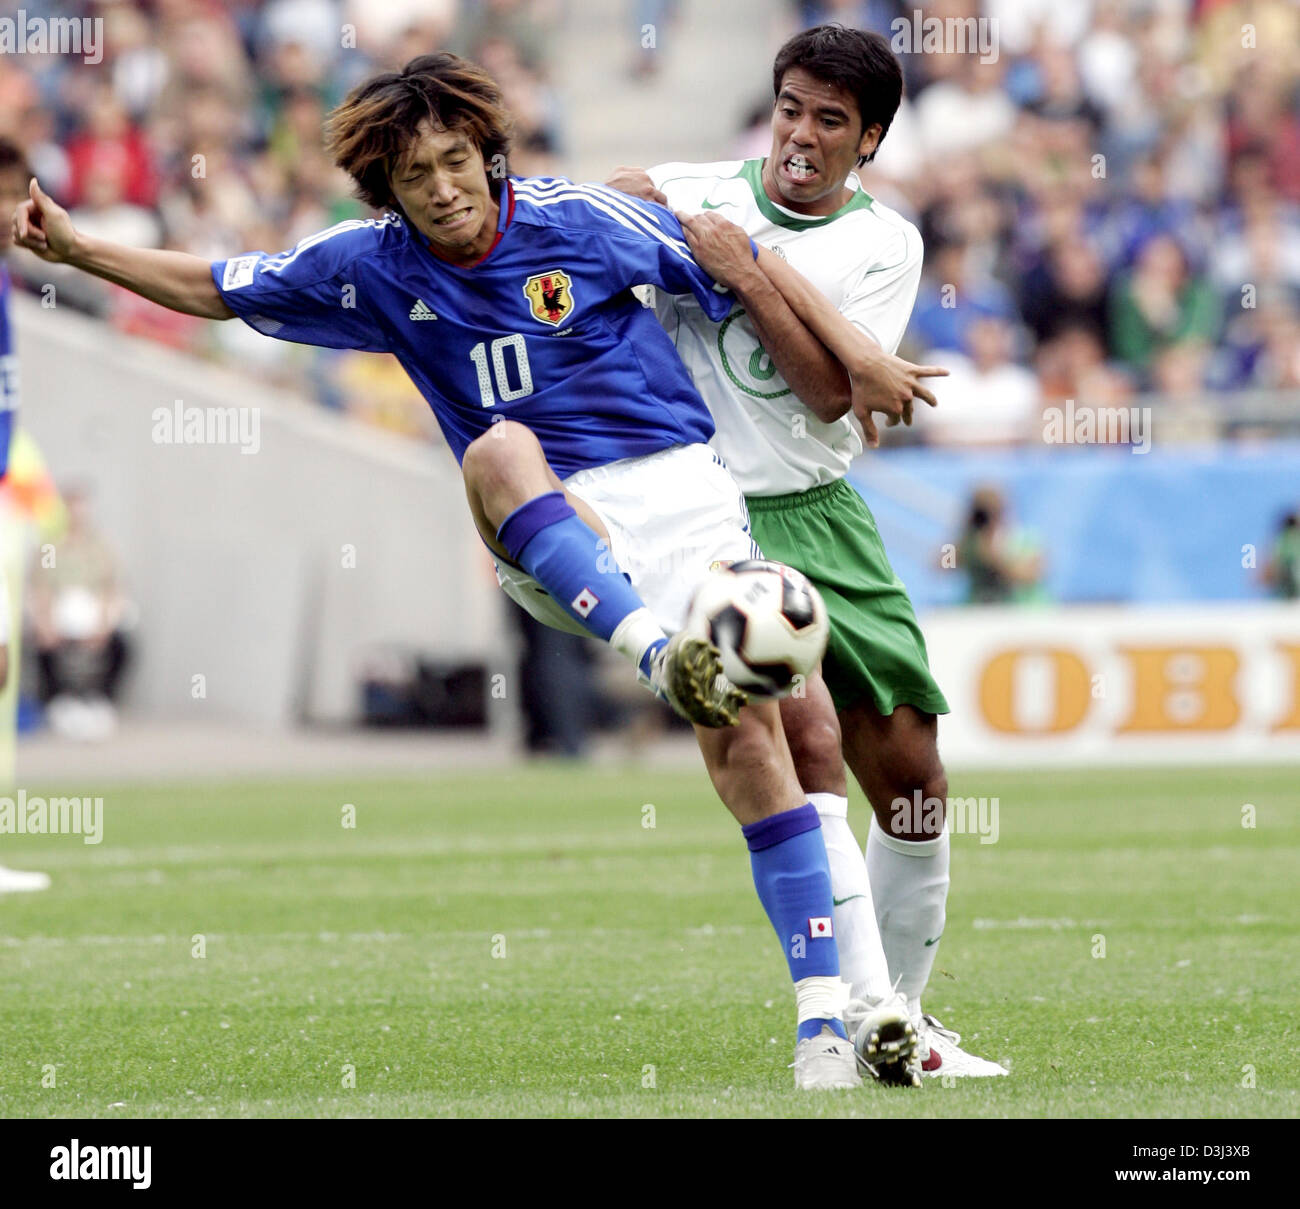 Ronaldinho vs Shunsuke Nakamura